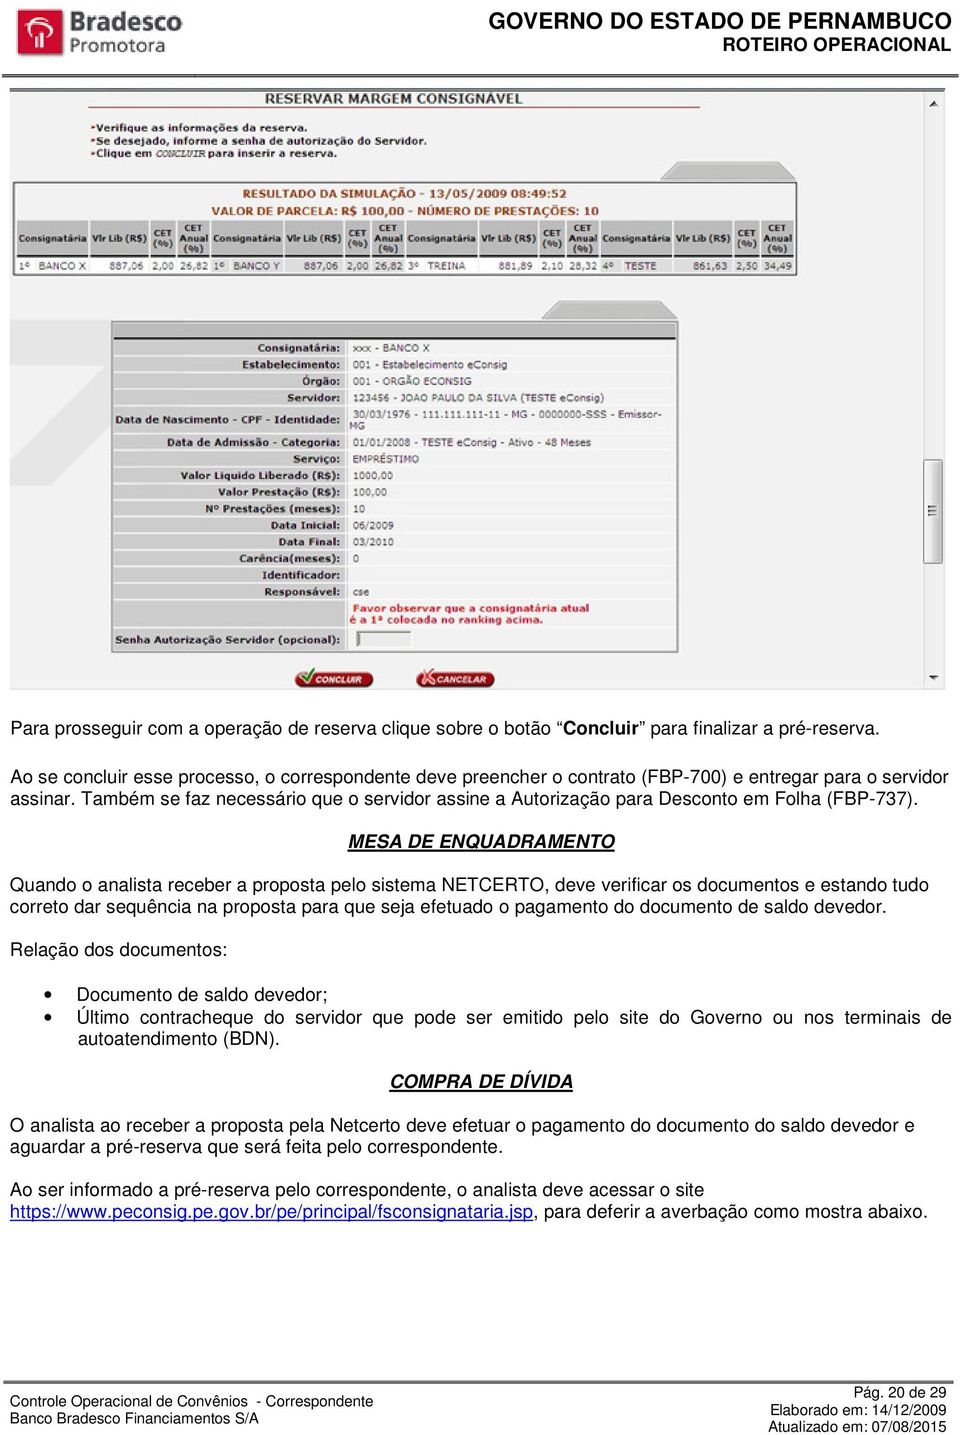 Também se faz necessário que o servidor assine a Autorização para Desconto em Folha (FBP-737).